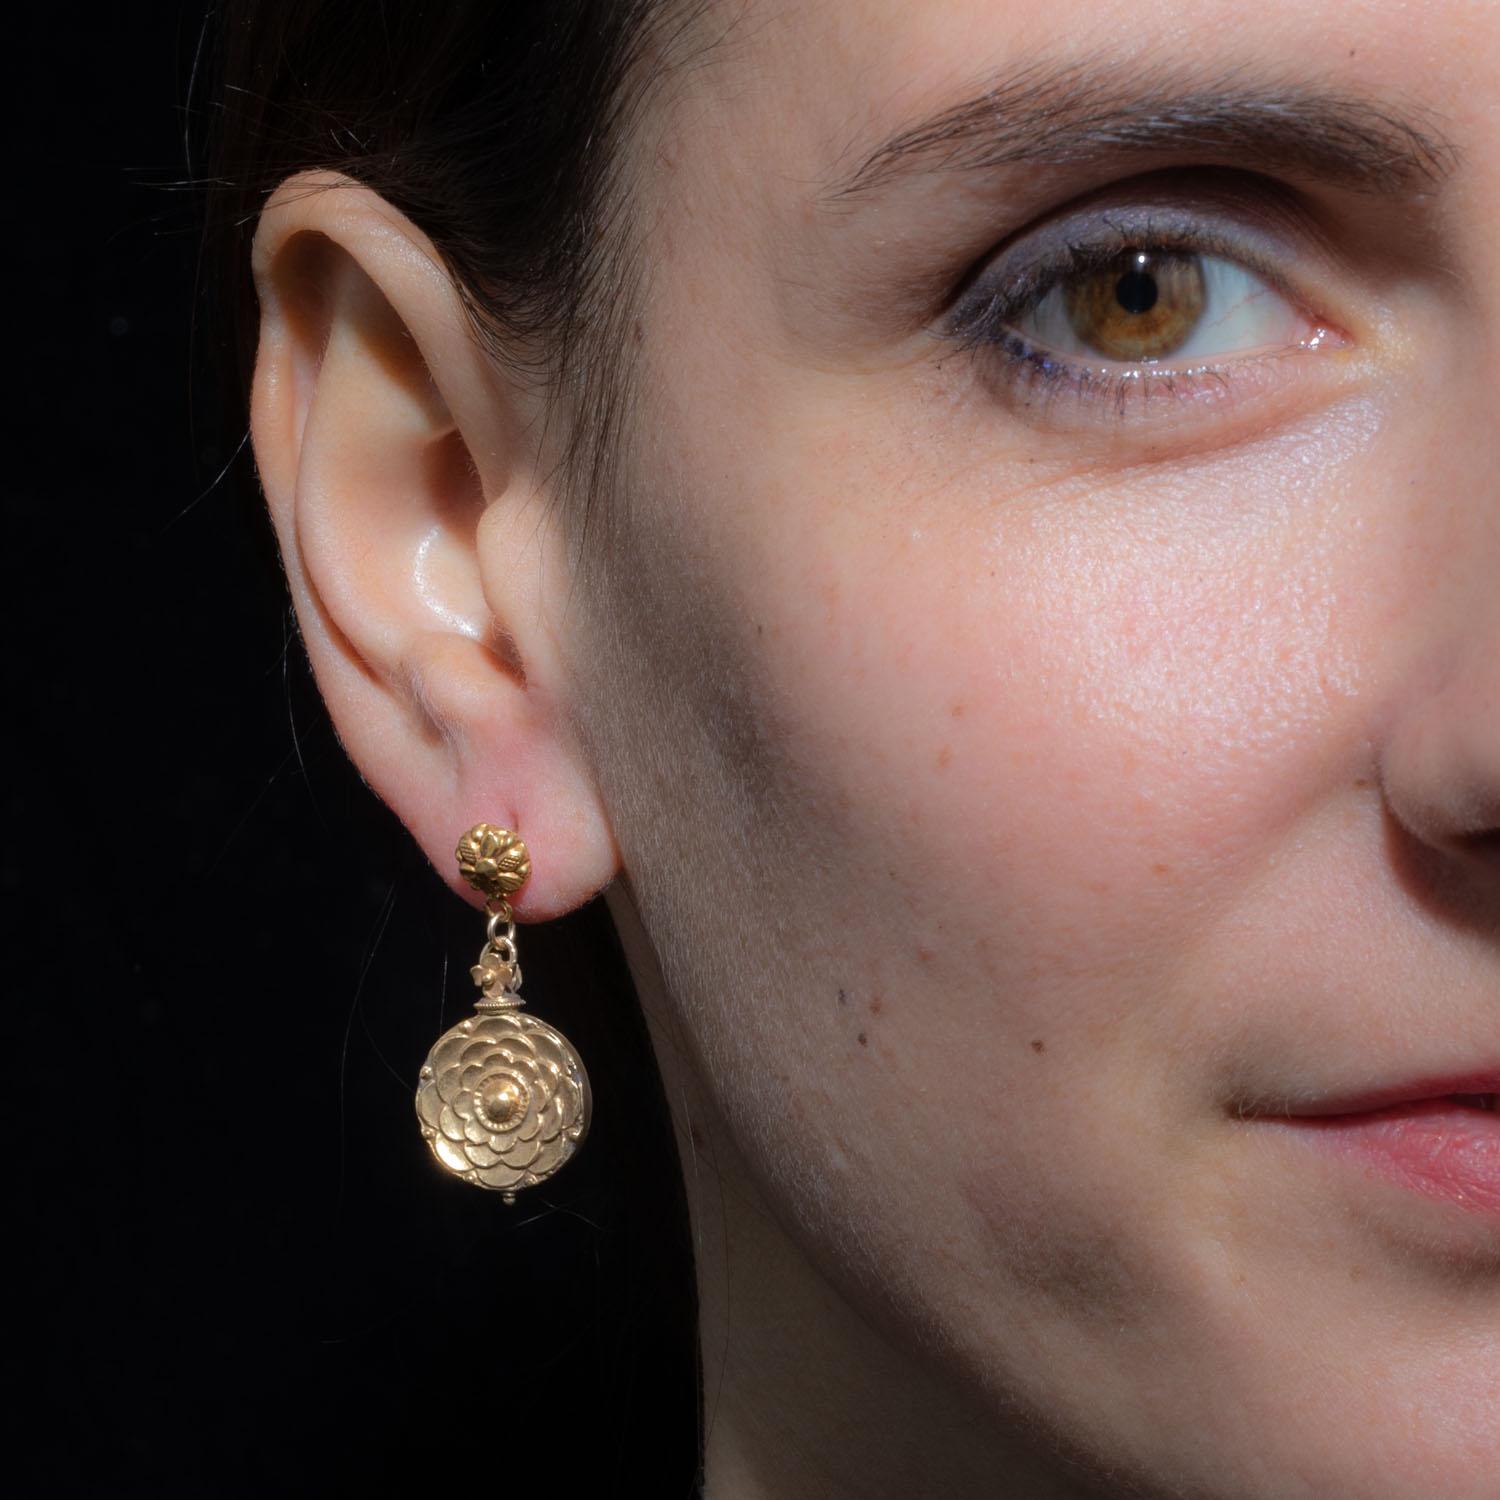 solid 22k pure gold elegant flower teardrop dangling earrings